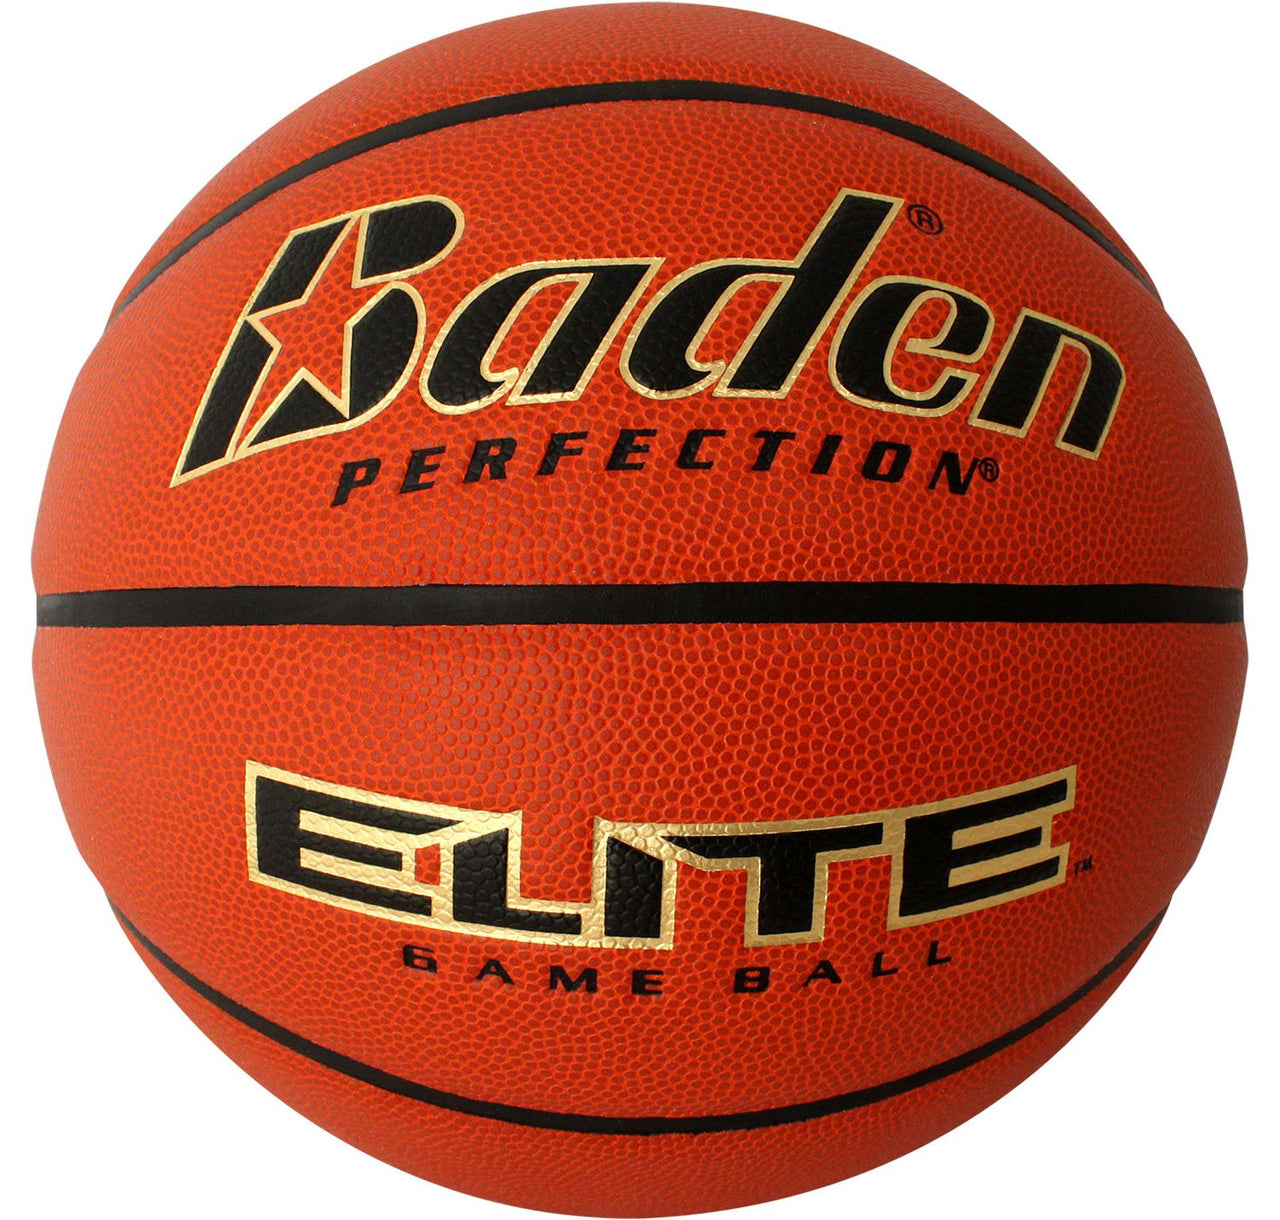 Baden Perfection Elite Official Basketball